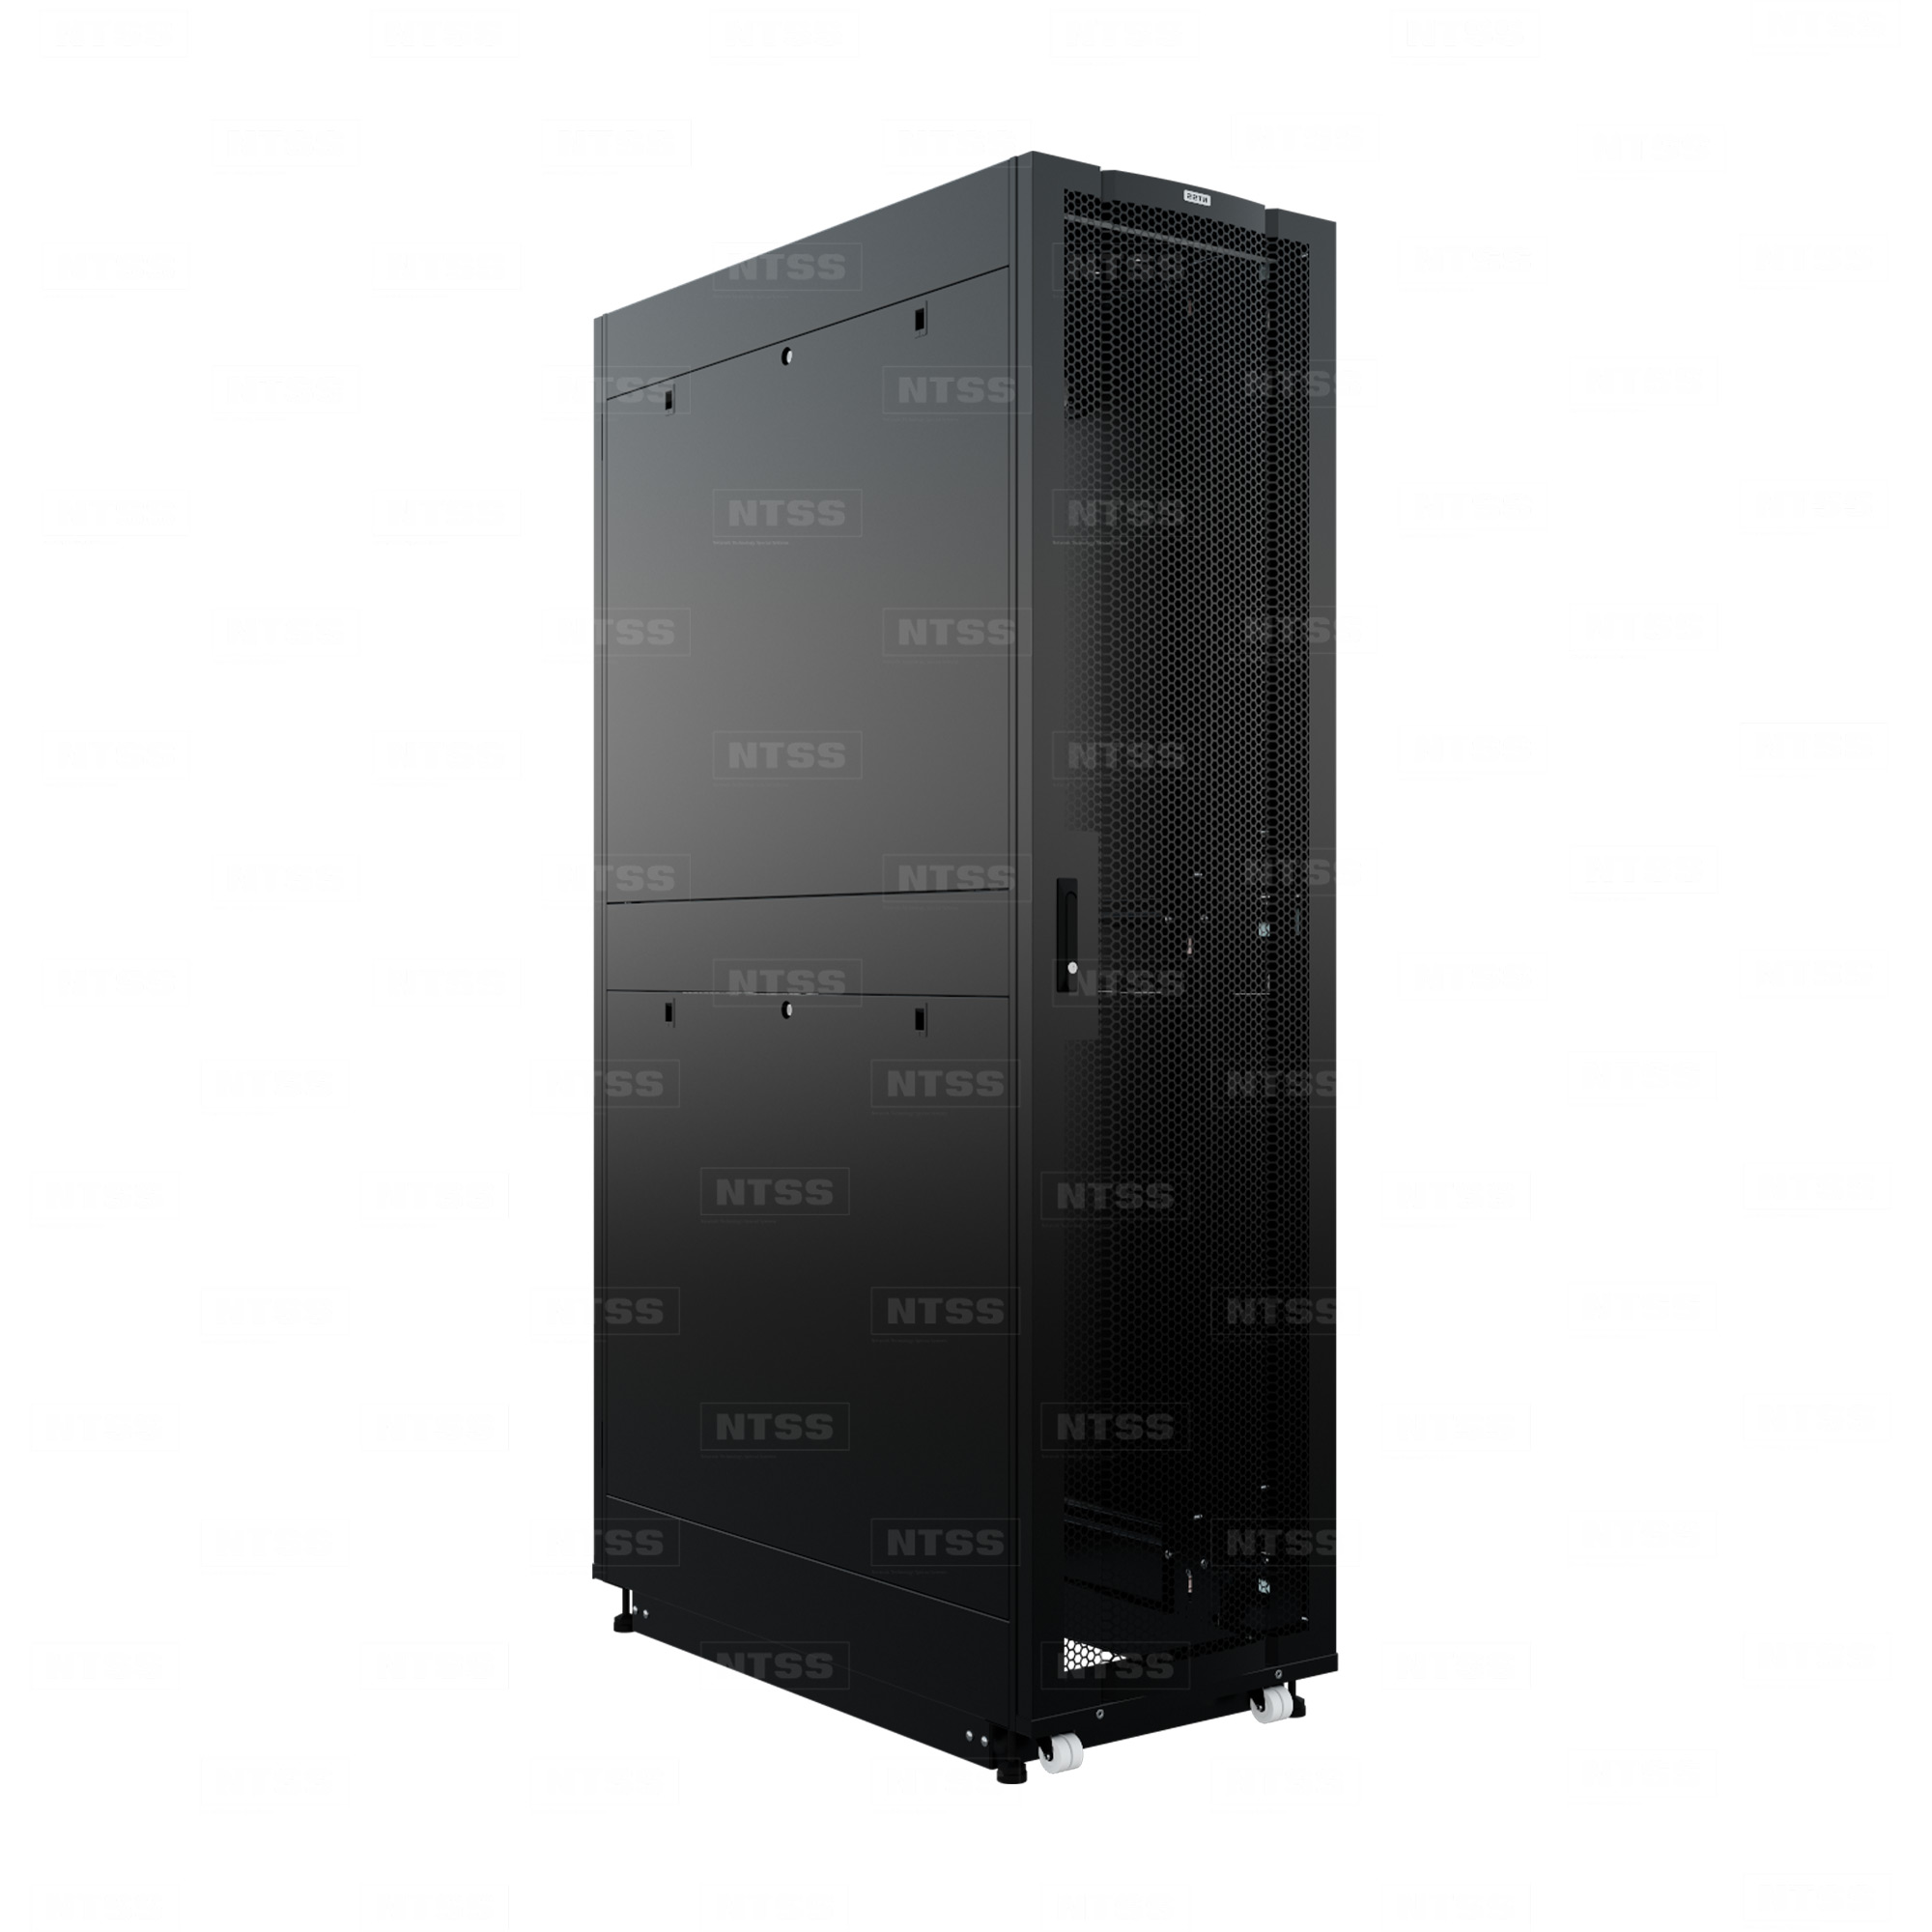 19" Напольный серверный шкаф NTSS ПРОЦОД PC МАСТЕР 42U 600х1200 мм, сварной в сборе, передняя дверь перфорация, задняя дверь распашная двойная перфорированная, боковые стенки, регулируемые опоры, ролики, черный RAL 9005